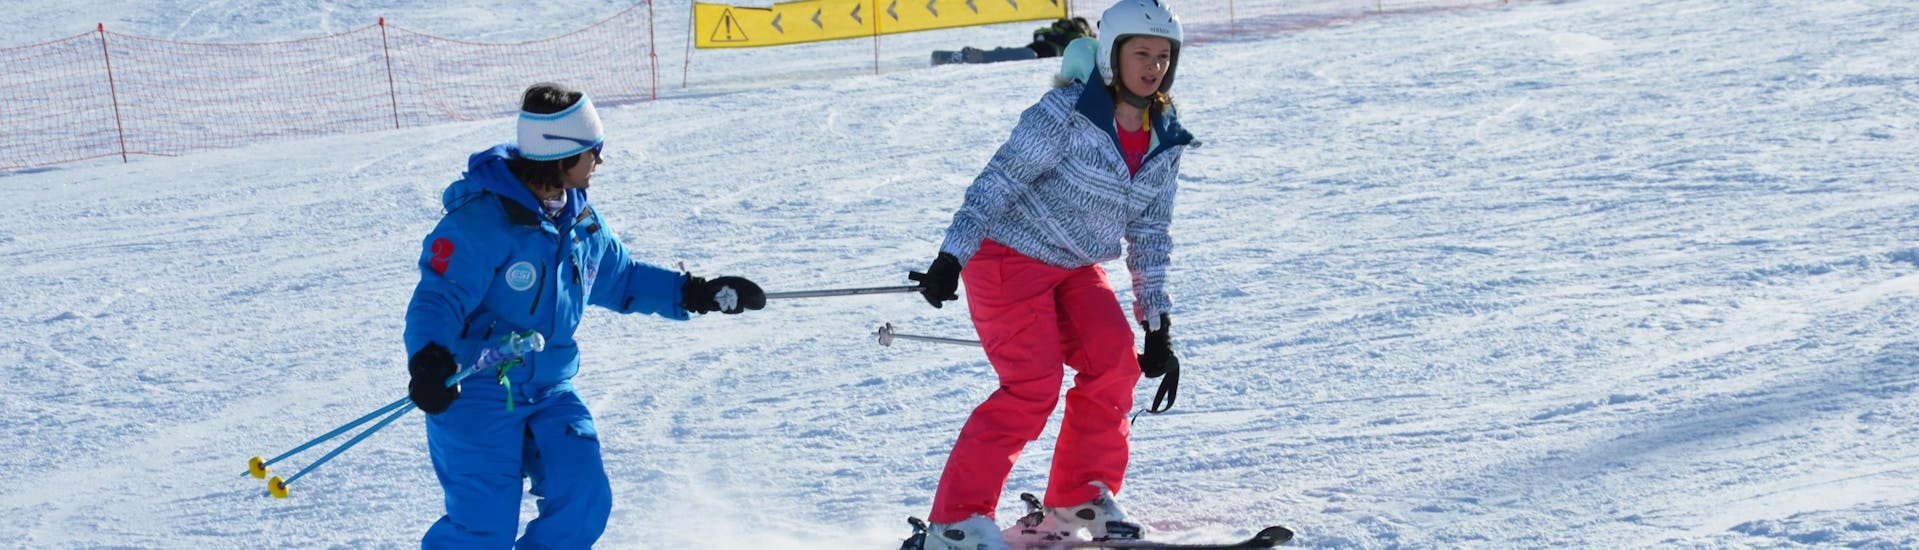 Een instructeur van de Europese Skischool in Les Deux Alpes begeleidt een vrouwelijke skiër in haar eerste stappen op ski's tijdens een privé skiles voor volwassenen.